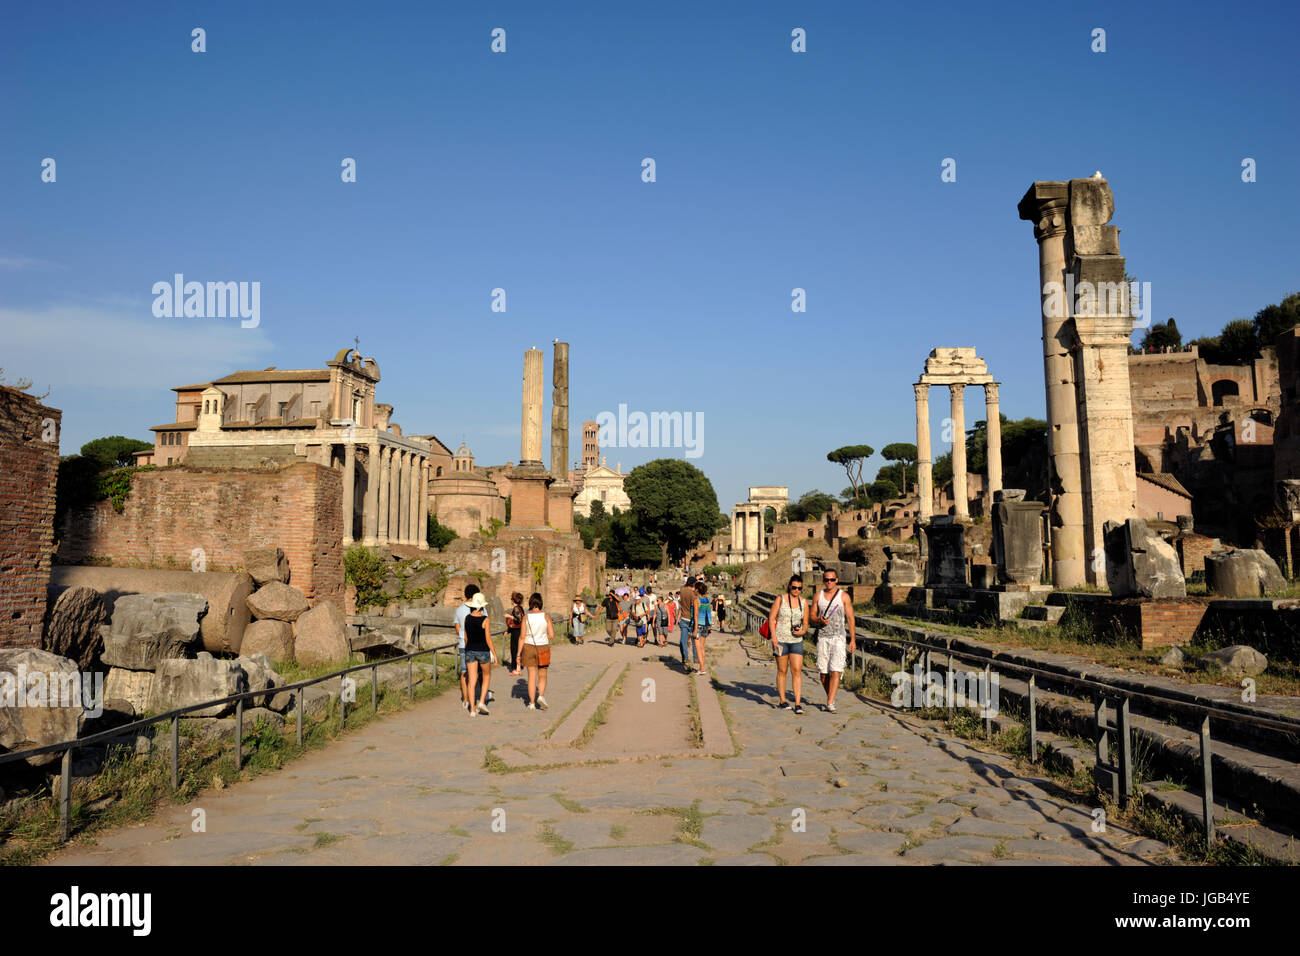 Italia, Roma, el foro romano, la via sacra (calle sagrada) Foto de stock